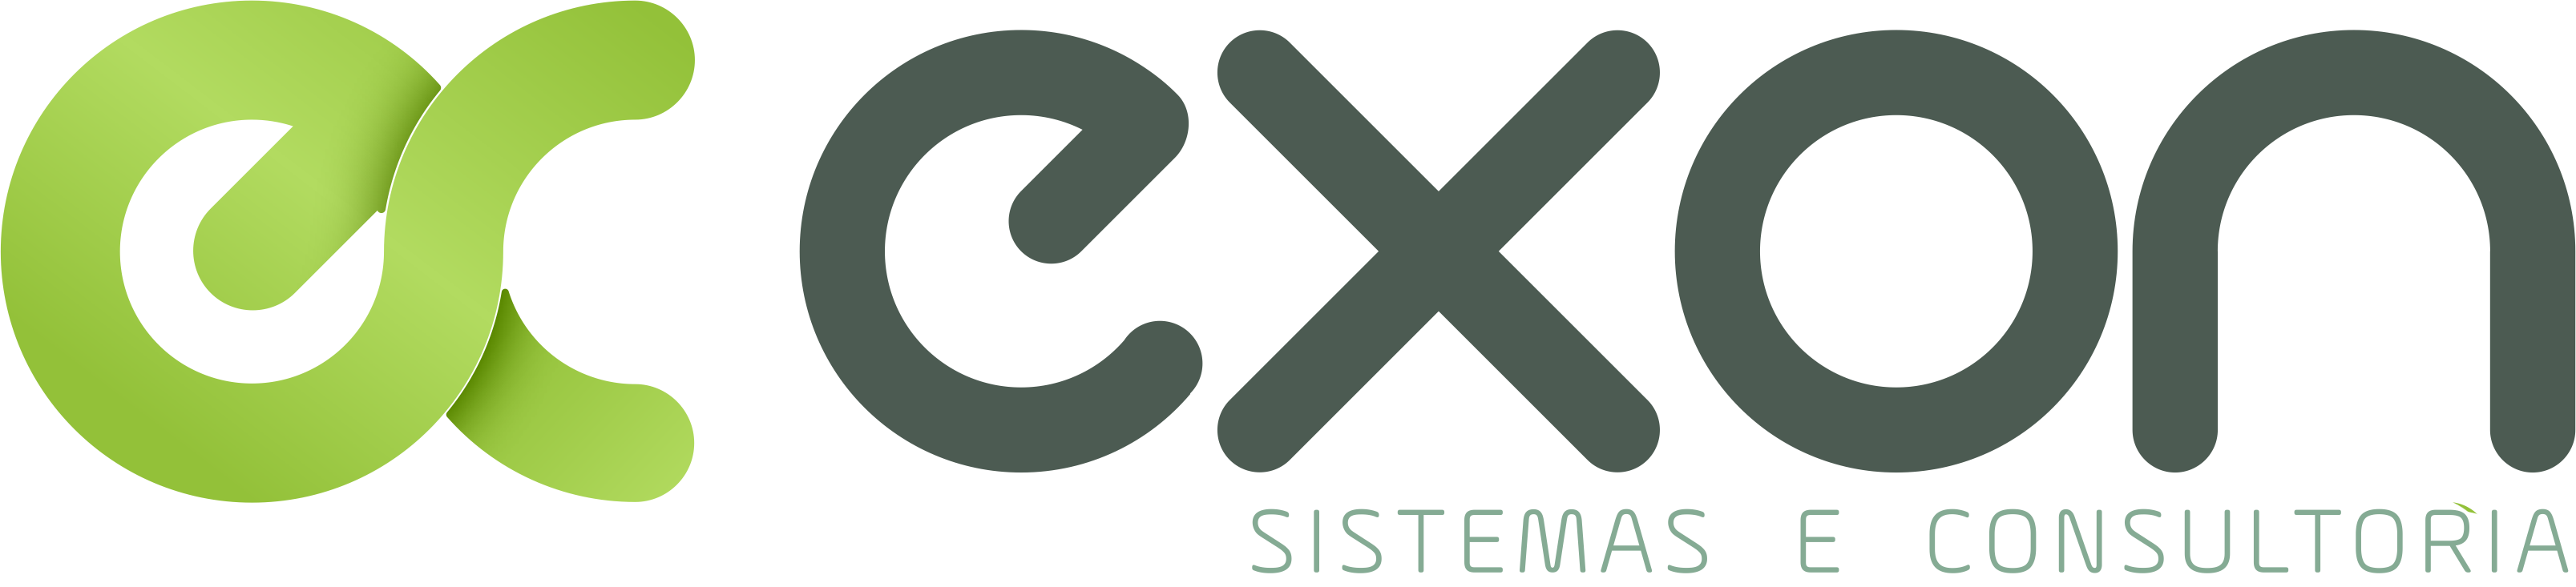 Exon logo